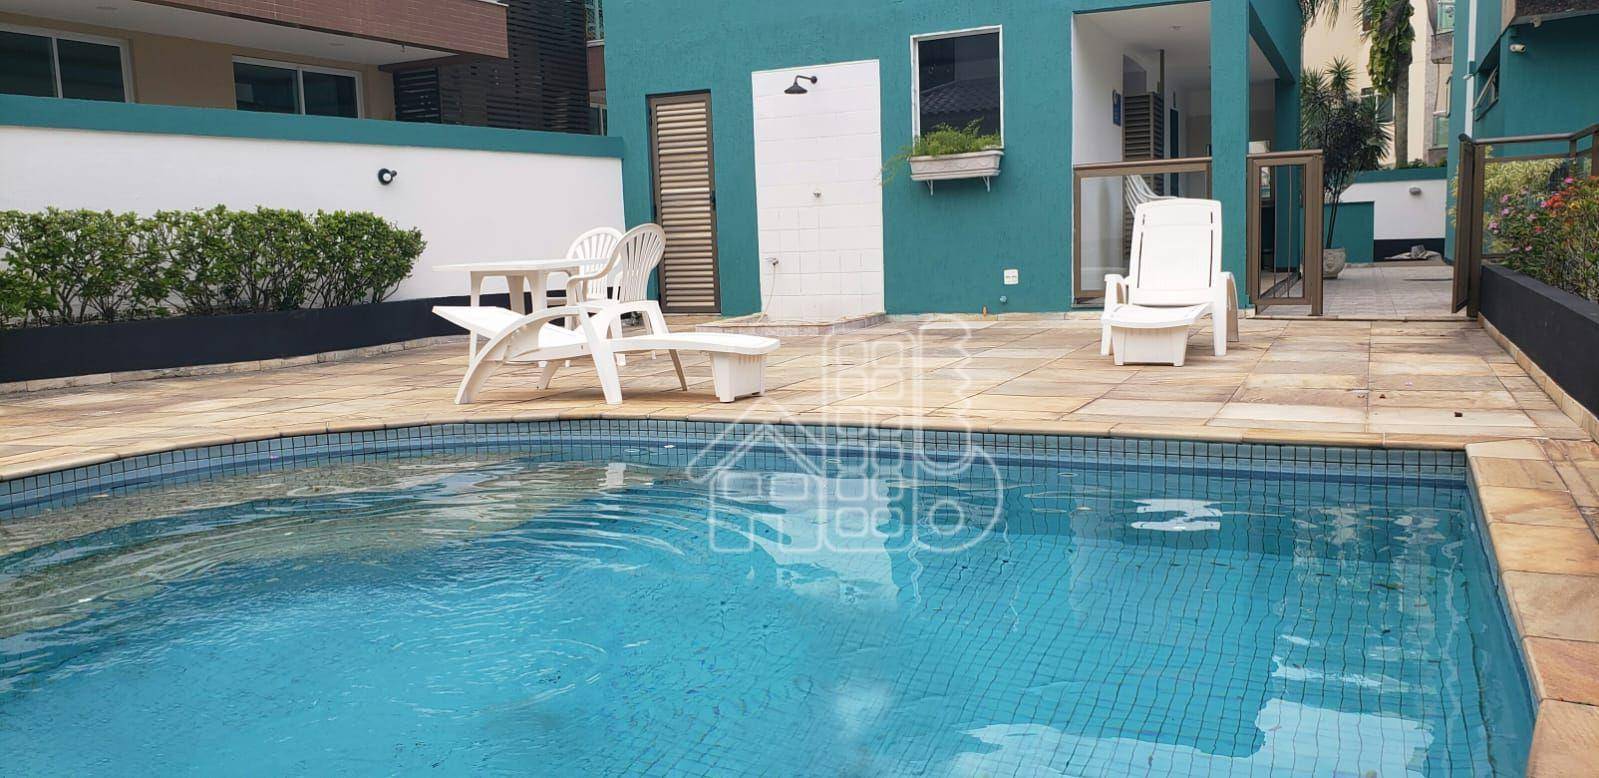 Flat com 1 dormitório à venda, 50 m² por R$ 480.000,00 - Itacoatiara - Niterói/RJ